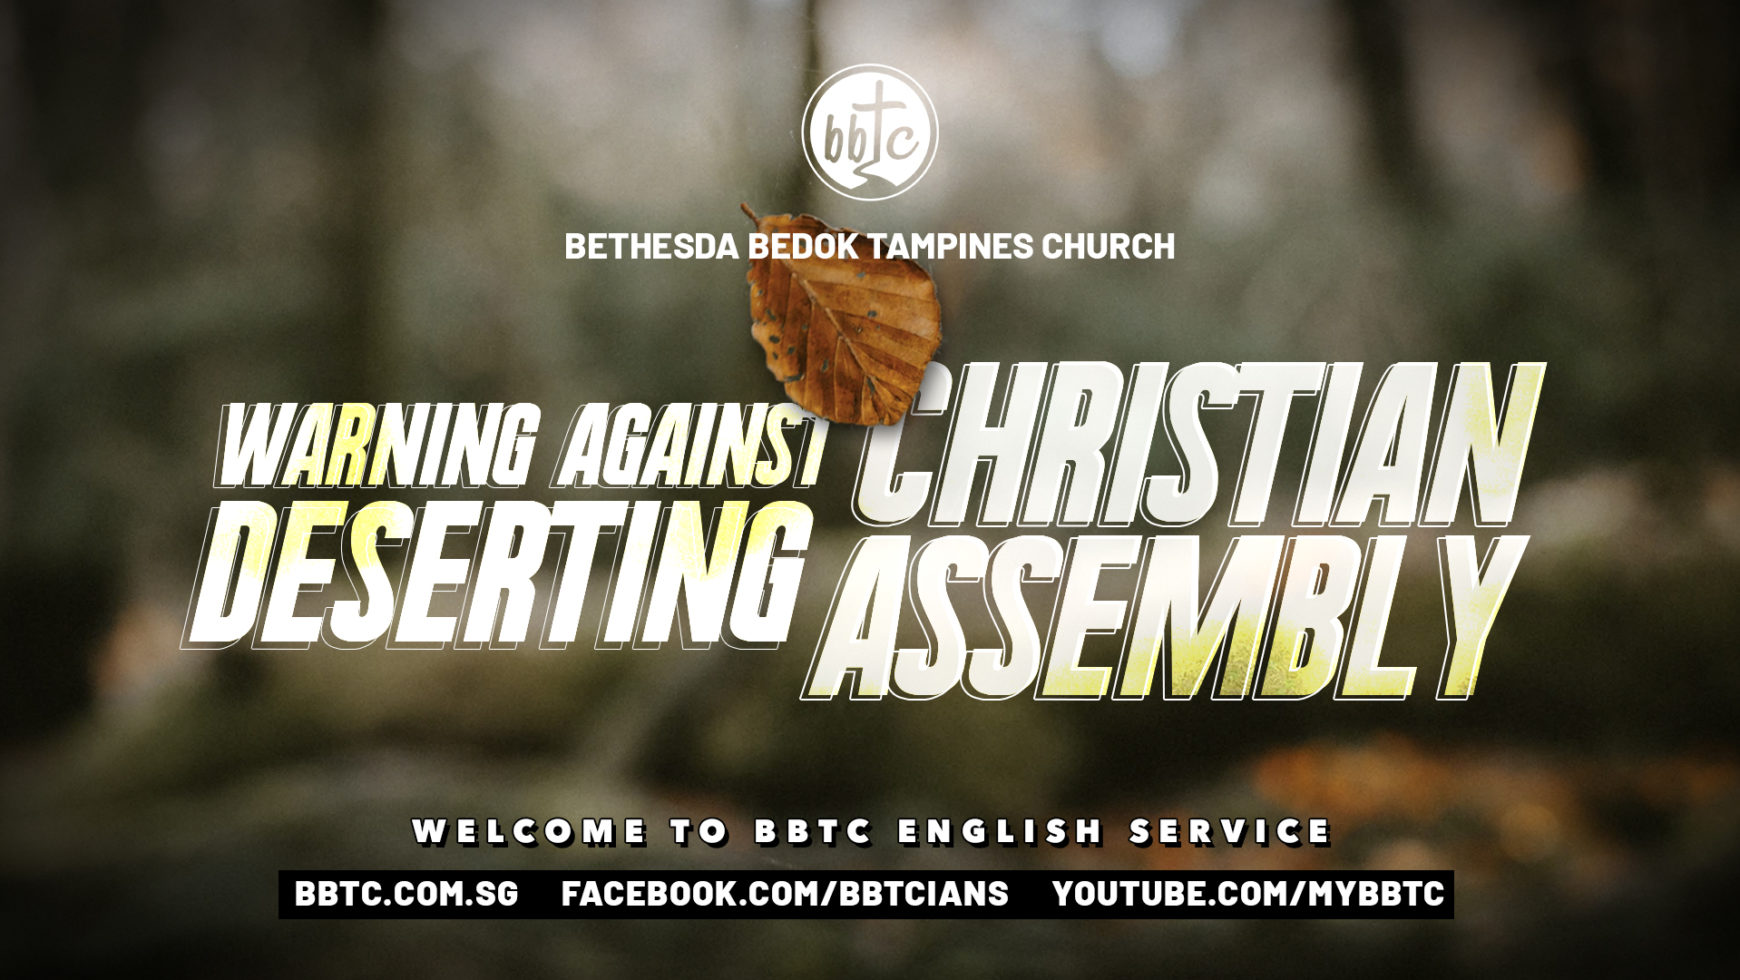 WARNING AGAINST DESERTING CHRISTIAN ASSEMBLY